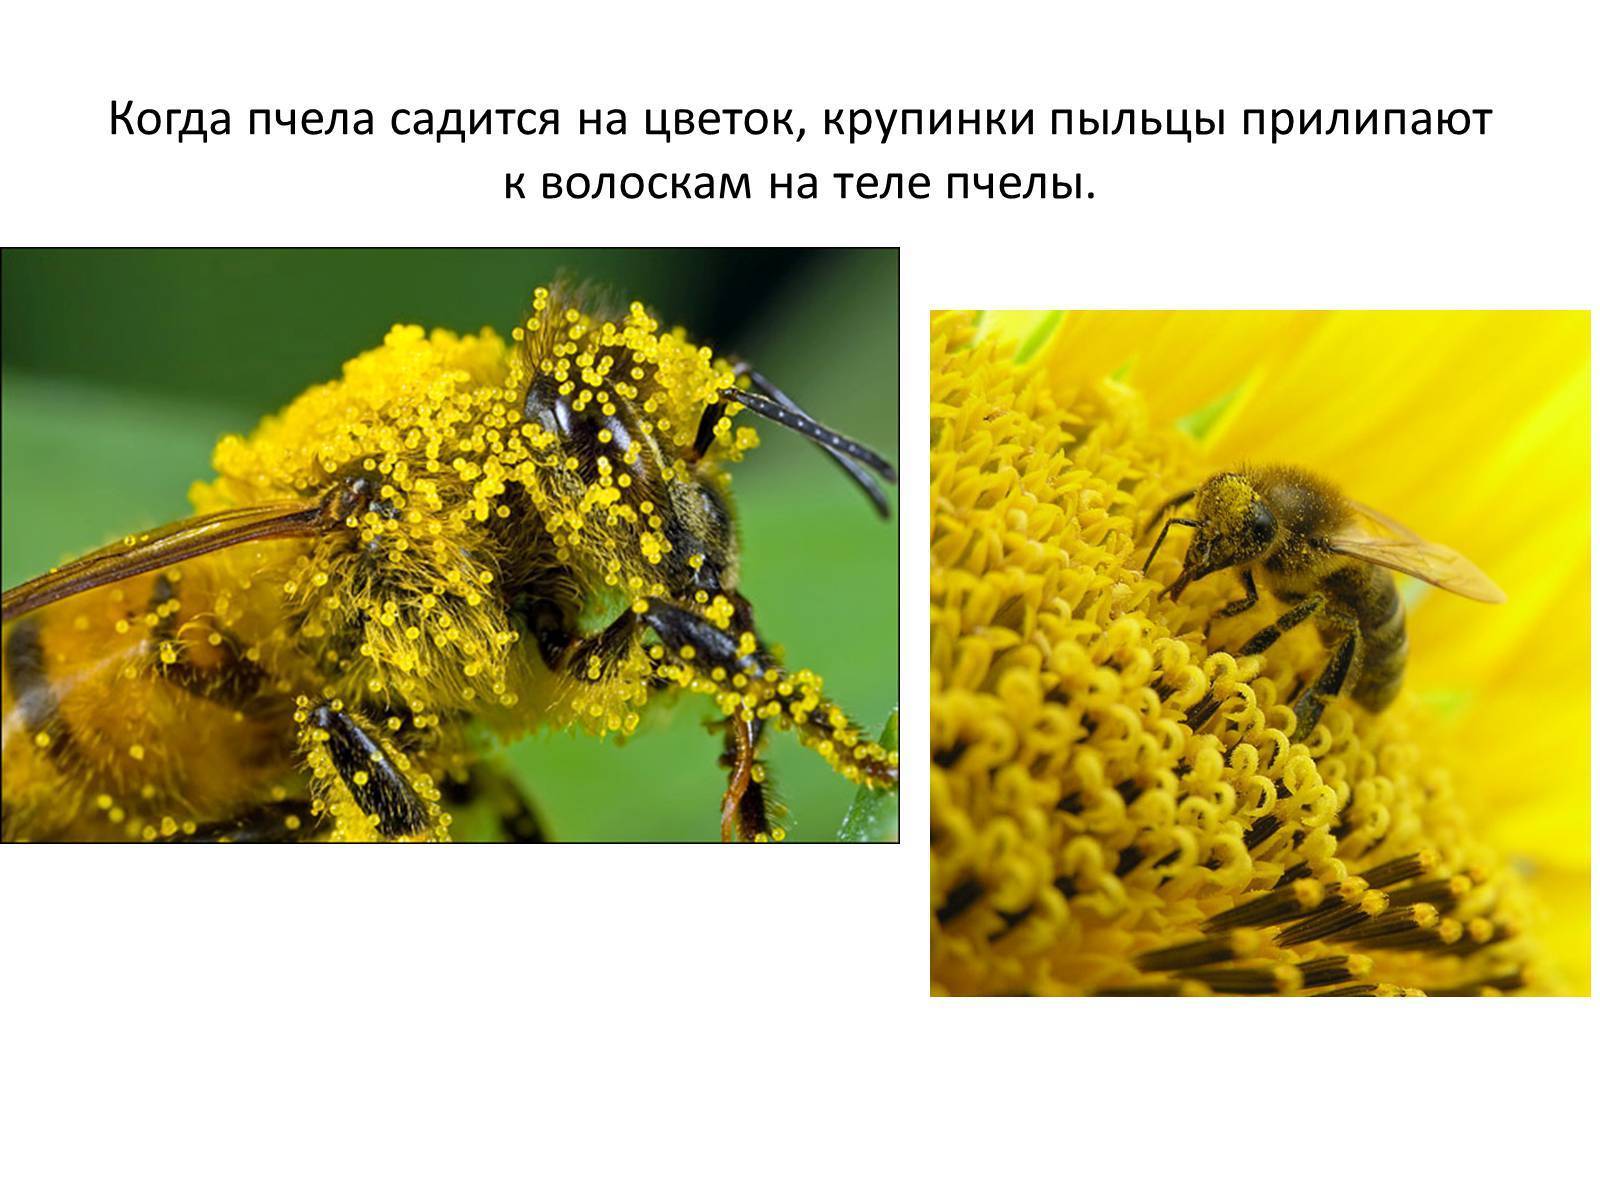 Какова роль пчел в опылении растений: как объяснить? какие цветки не могут опыляться пчелами?